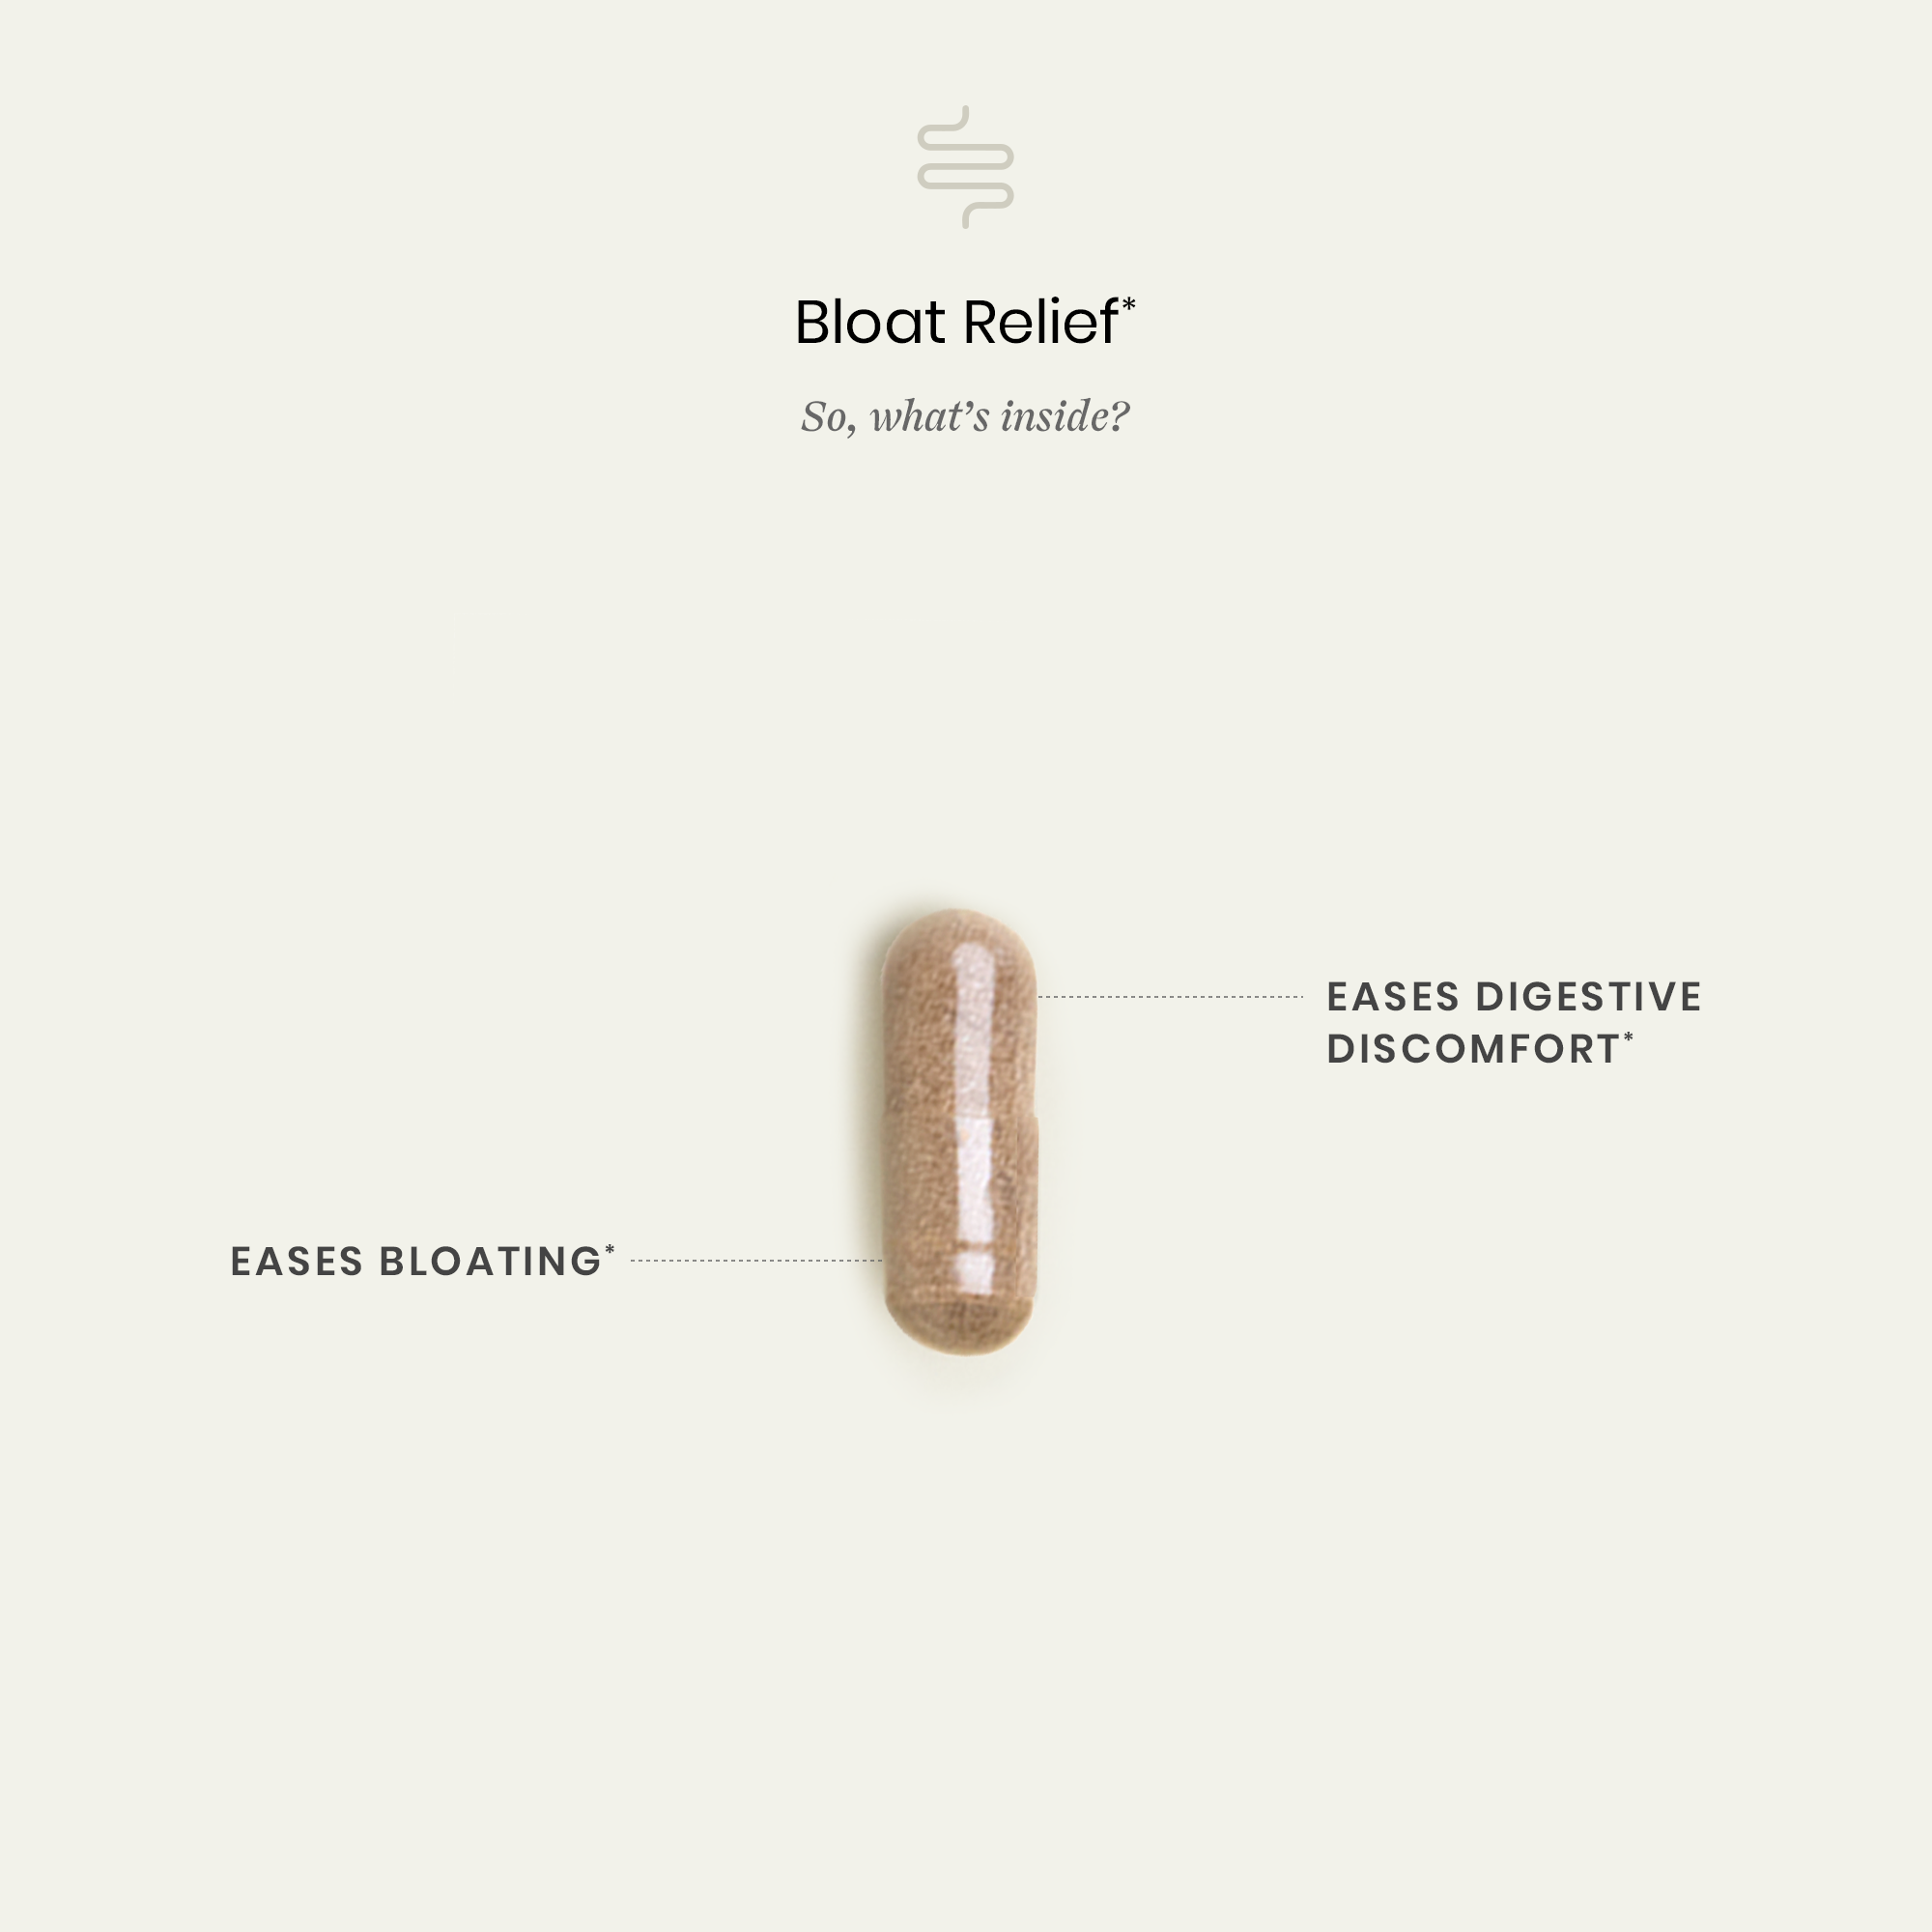 Bloat Relief  Ingredients and Benefits